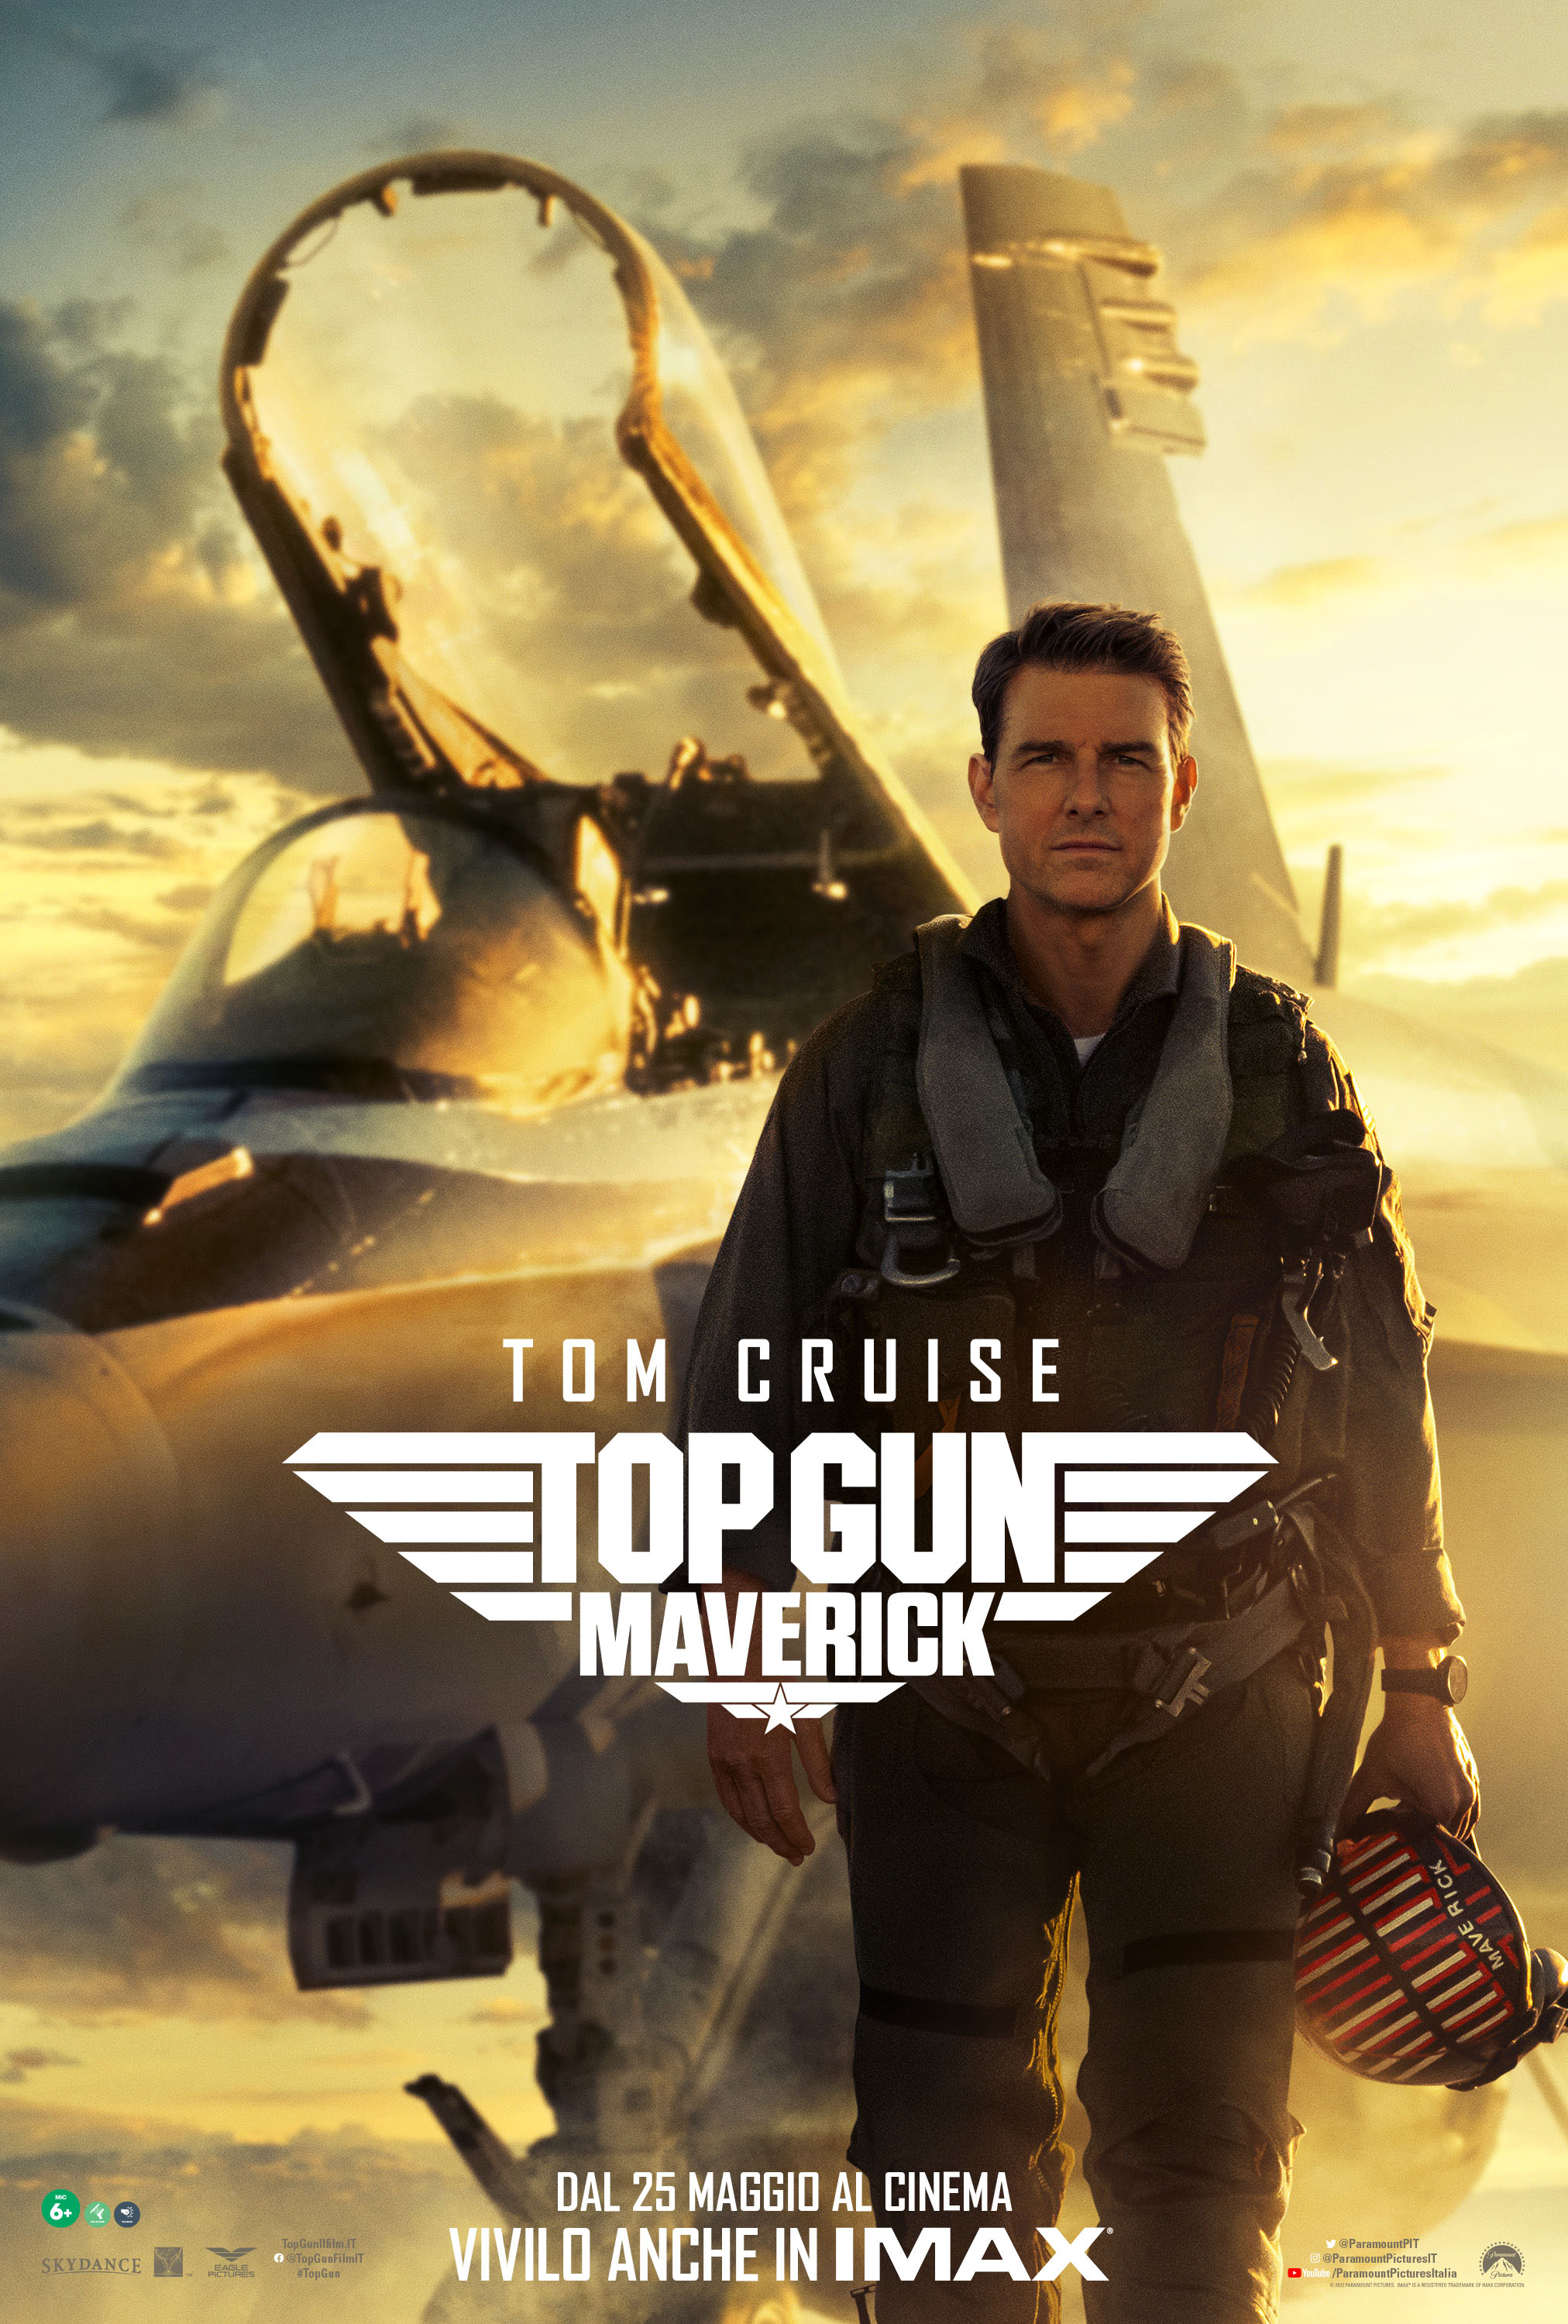 tom cruise e il suo jet nel poster di top gun maverick - nerdface